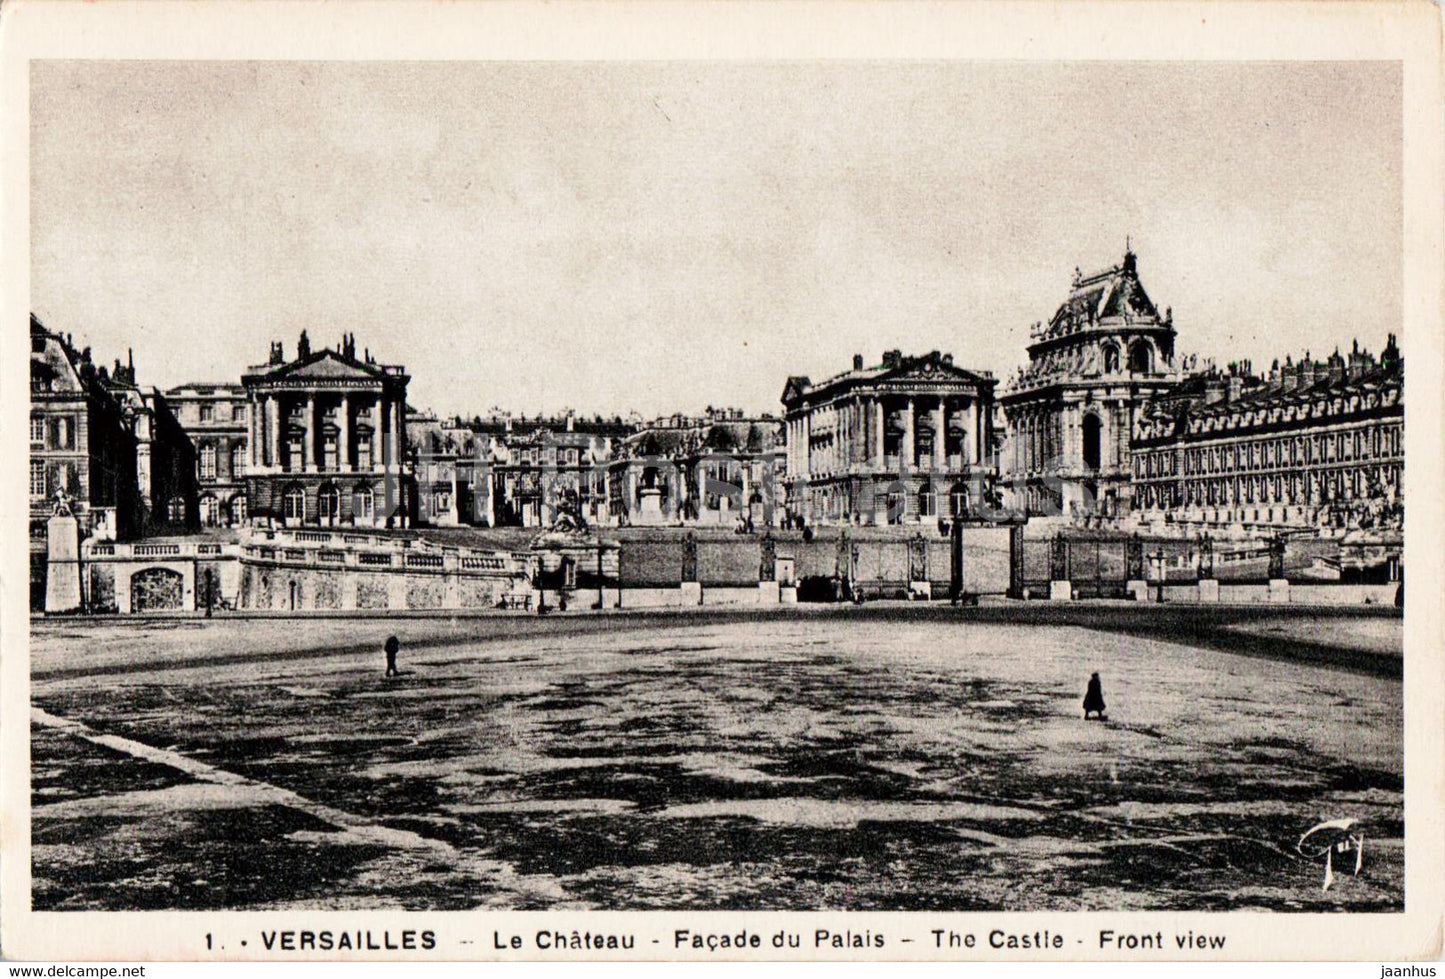 Versailles - Le Chateau - Facade du Palais - castle - 1 - old postcard - France - unused - JH Postcards